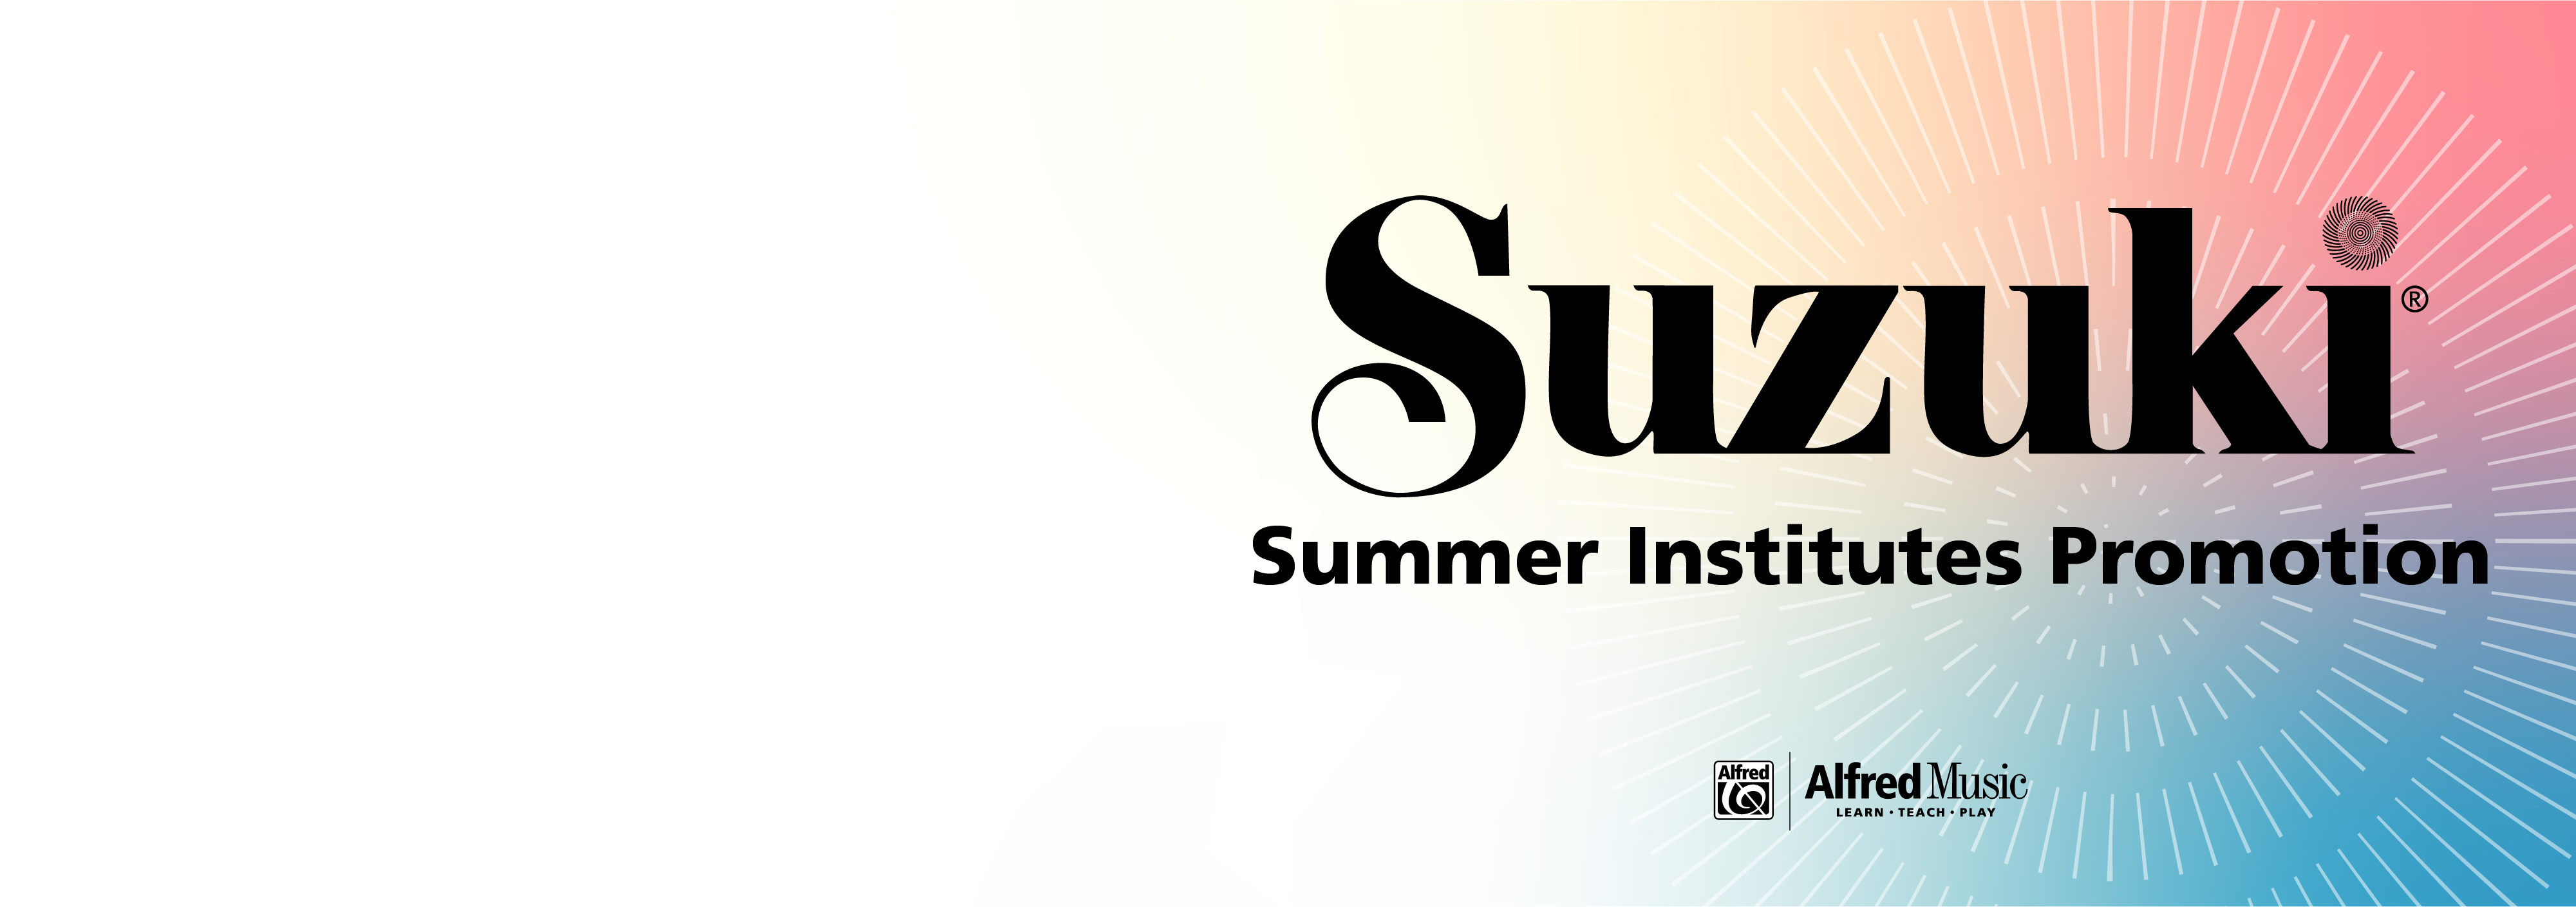 Summer Institutes Promotion